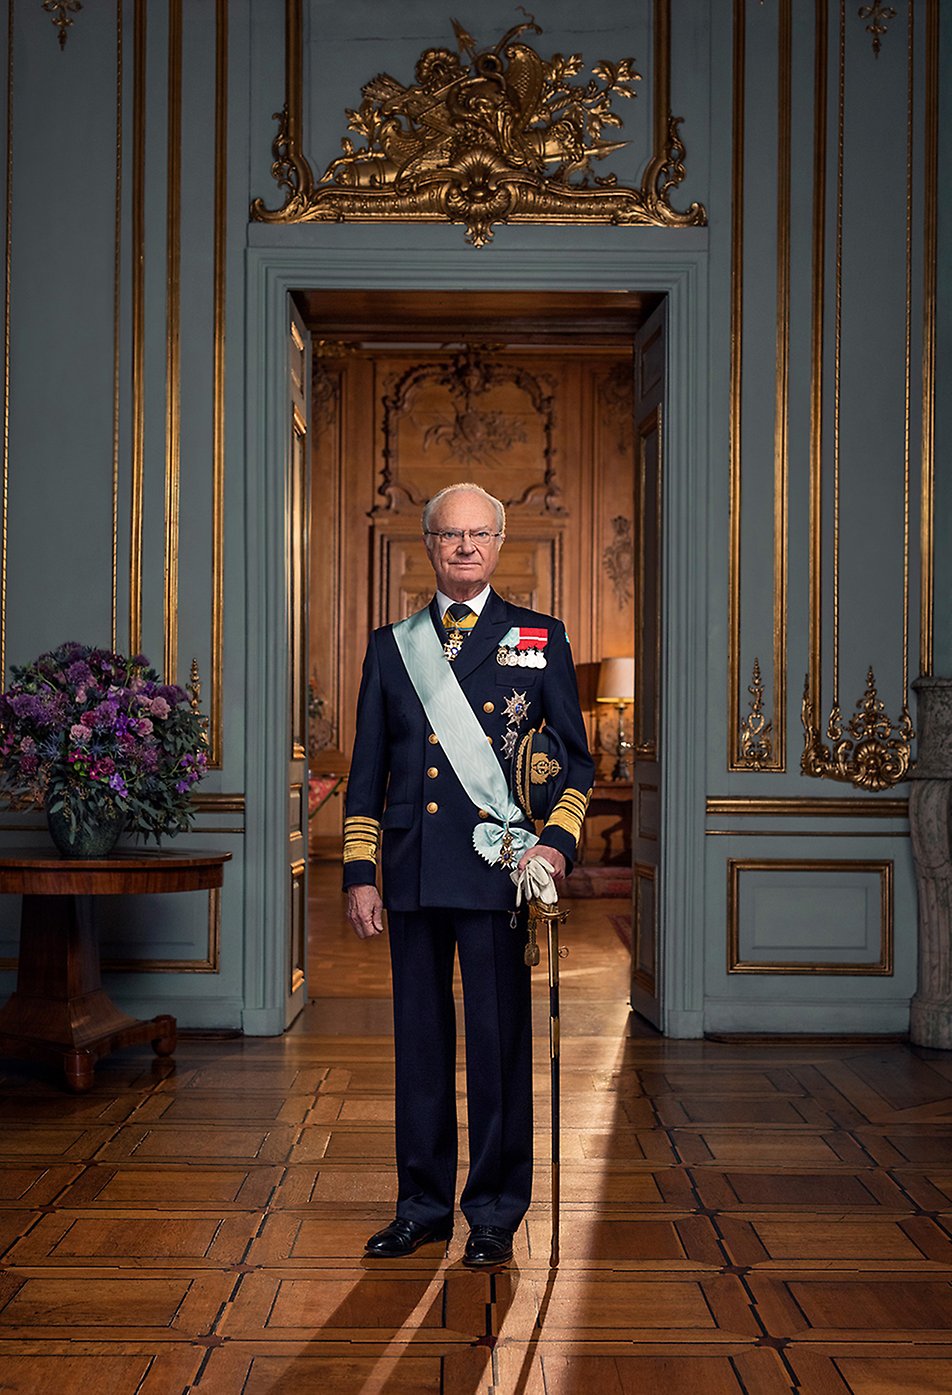 اعلیحضرت پادشاه کارل گوستاو شانزدهم. عکس: تورن اولبری/ دادگاه سلطنتی سوئد